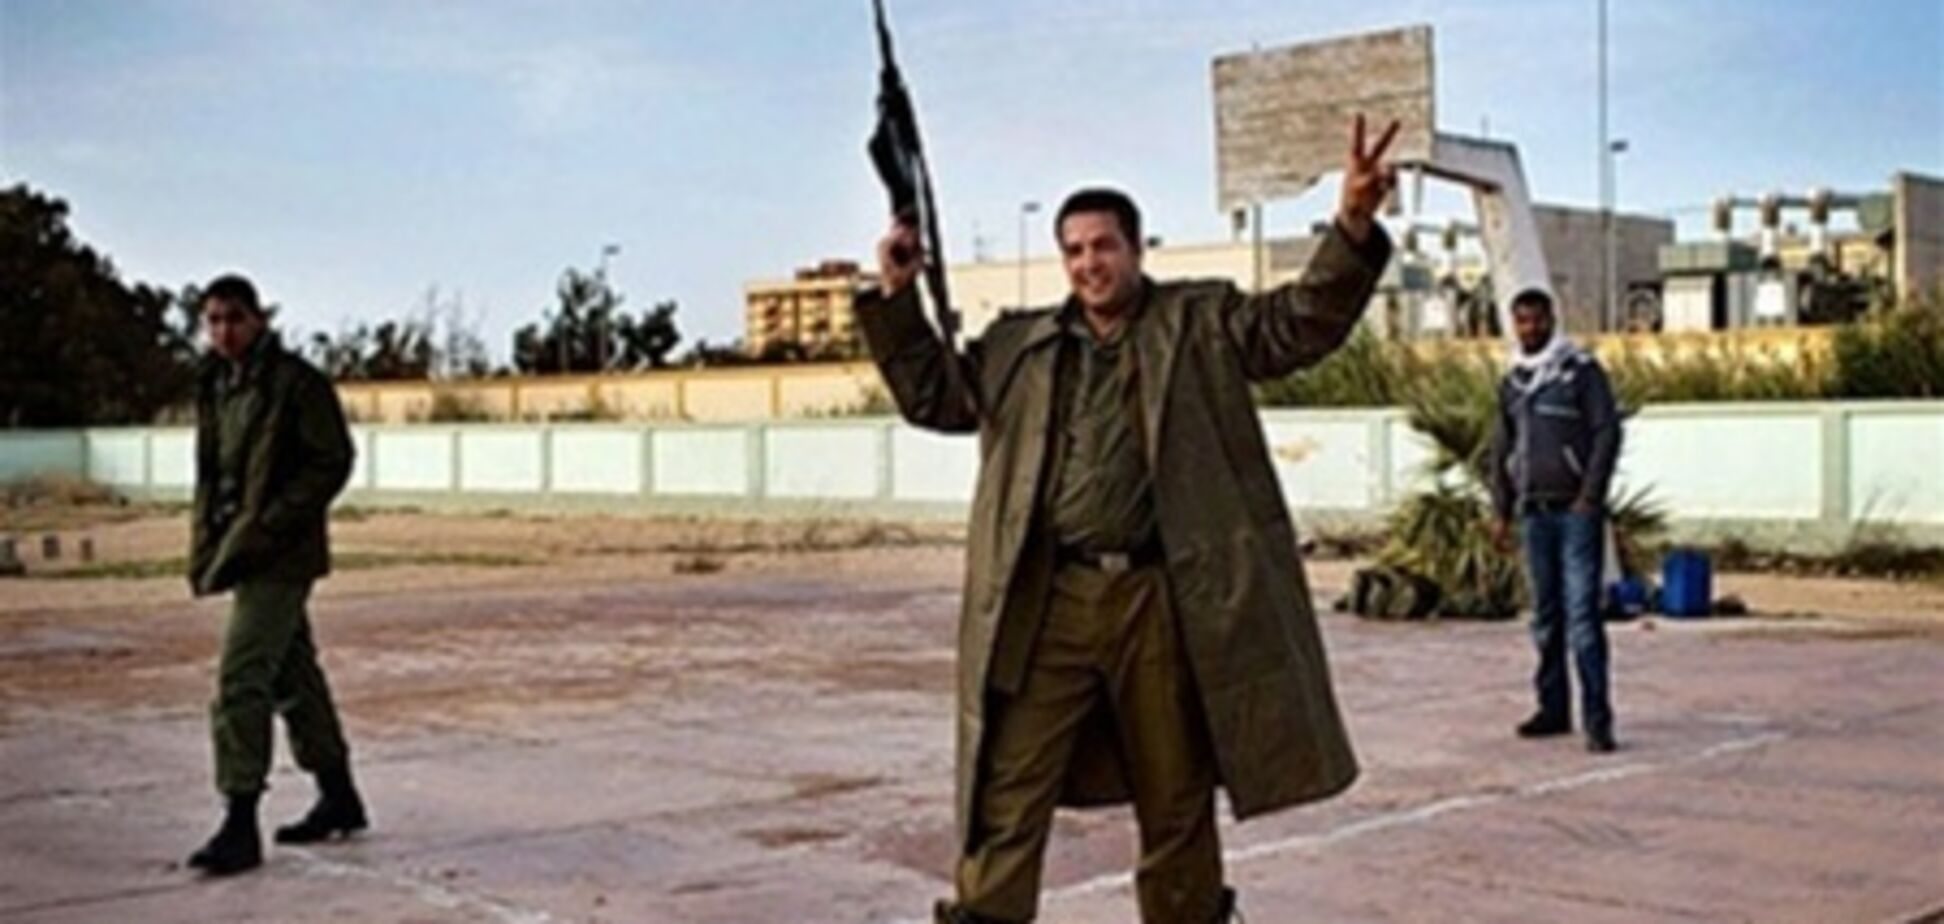 Группировки в Ливии начали выгонять из занимаемых ими зданий